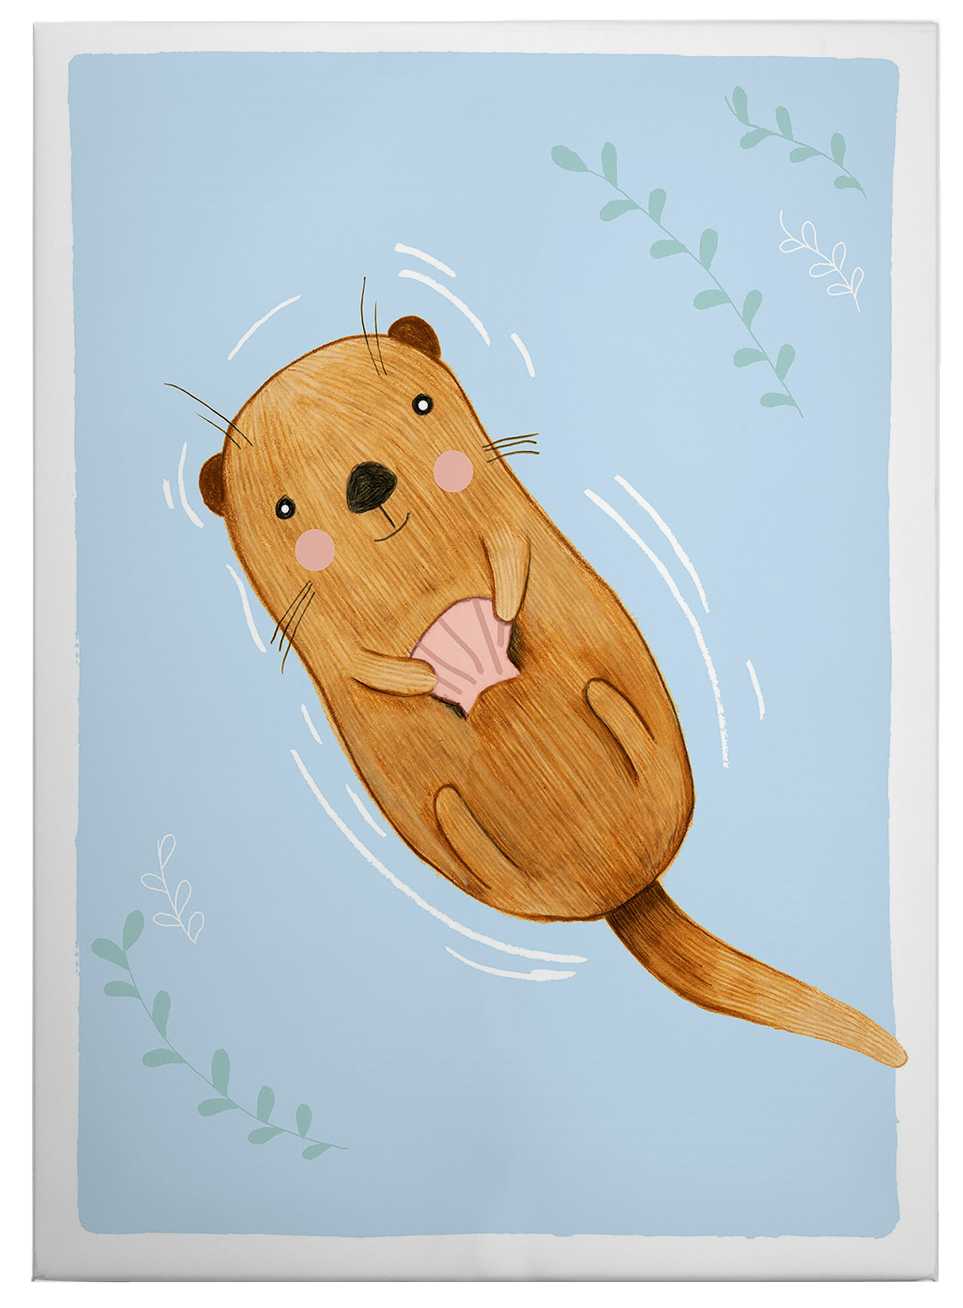             Loske Leinwandbild Kinder liegender Otter – 0,50 m x 0,70 m
        